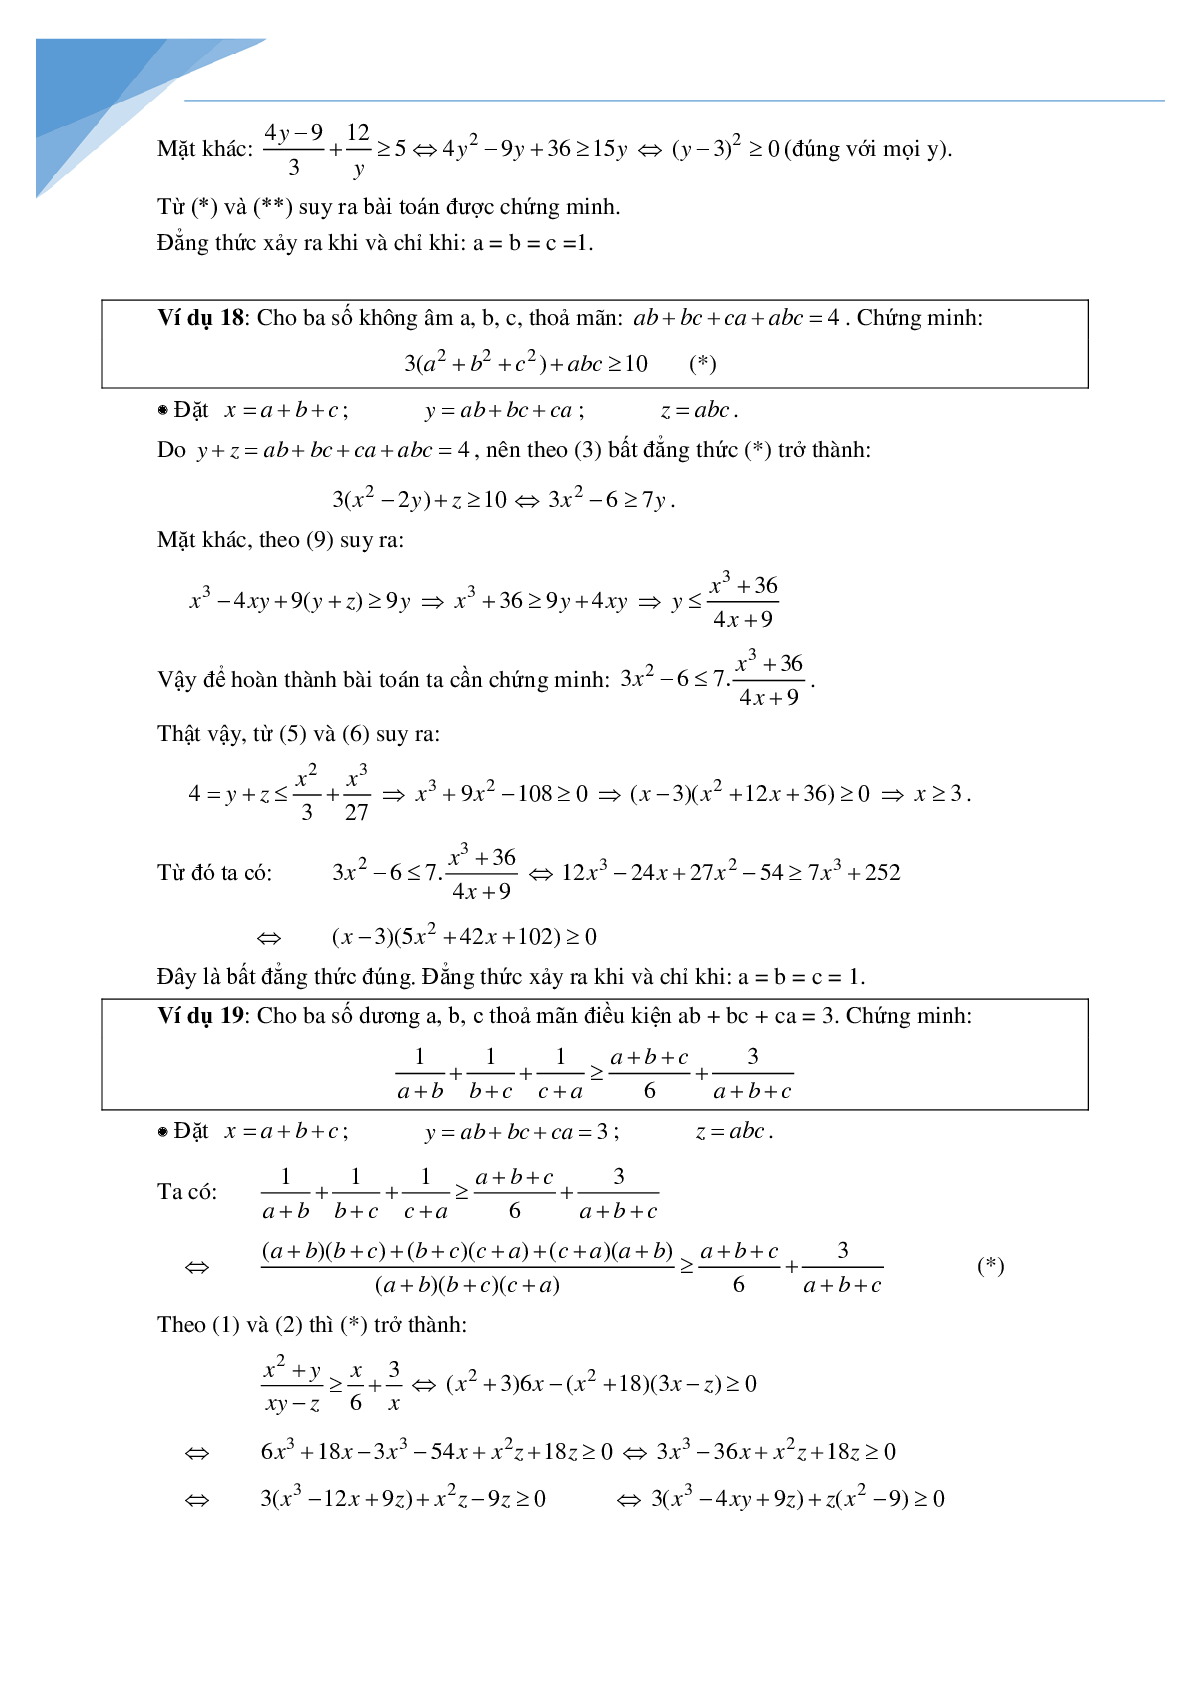 Phương pháp đổi biến trong chứng minh bất đẳng thức (trang 7)